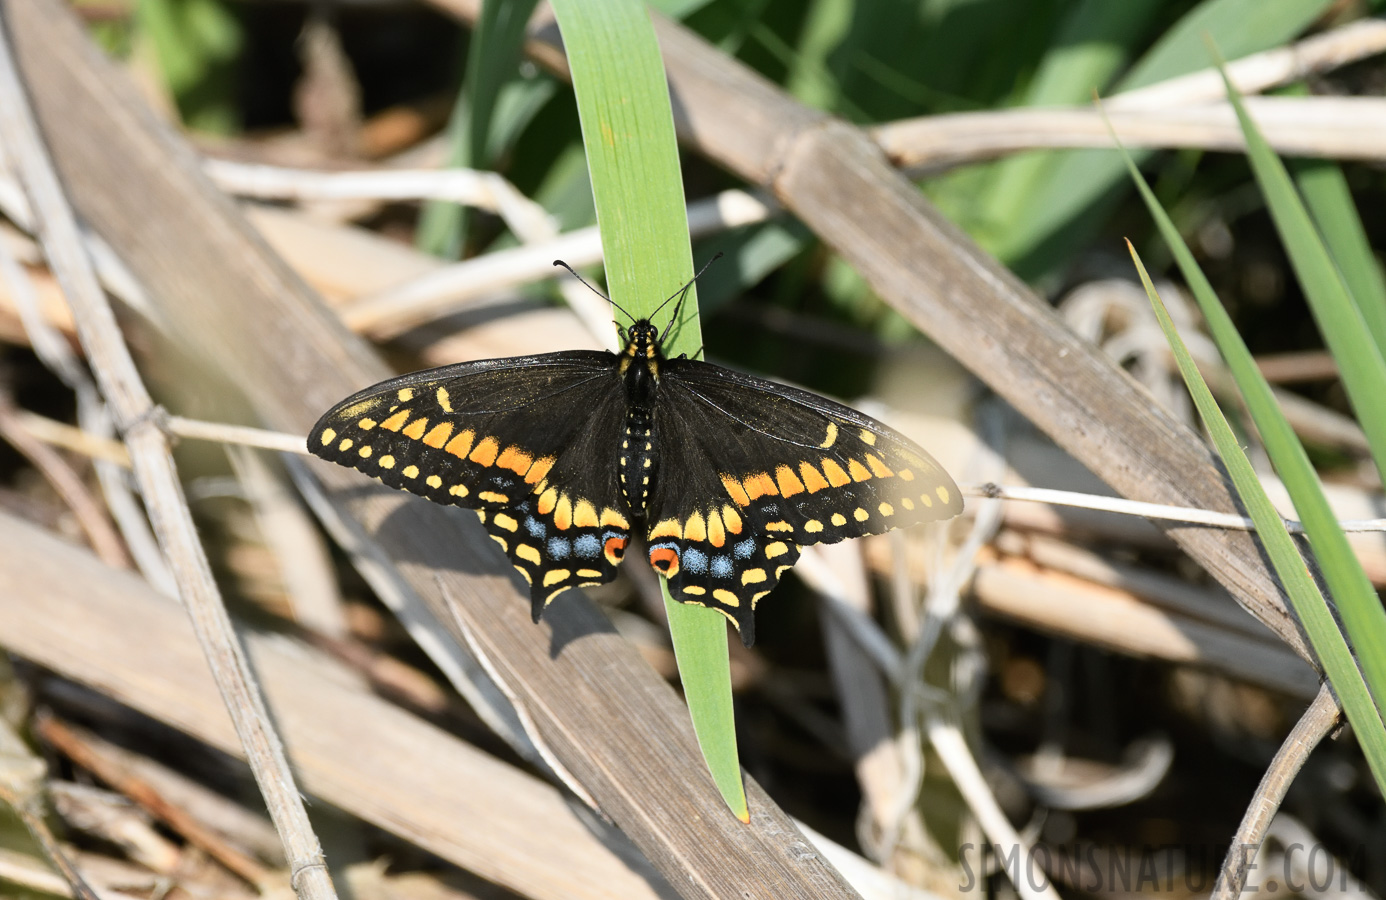 Papilio brevicauda [400 mm, 1/1600 sec at f / 8.0, ISO 1000]